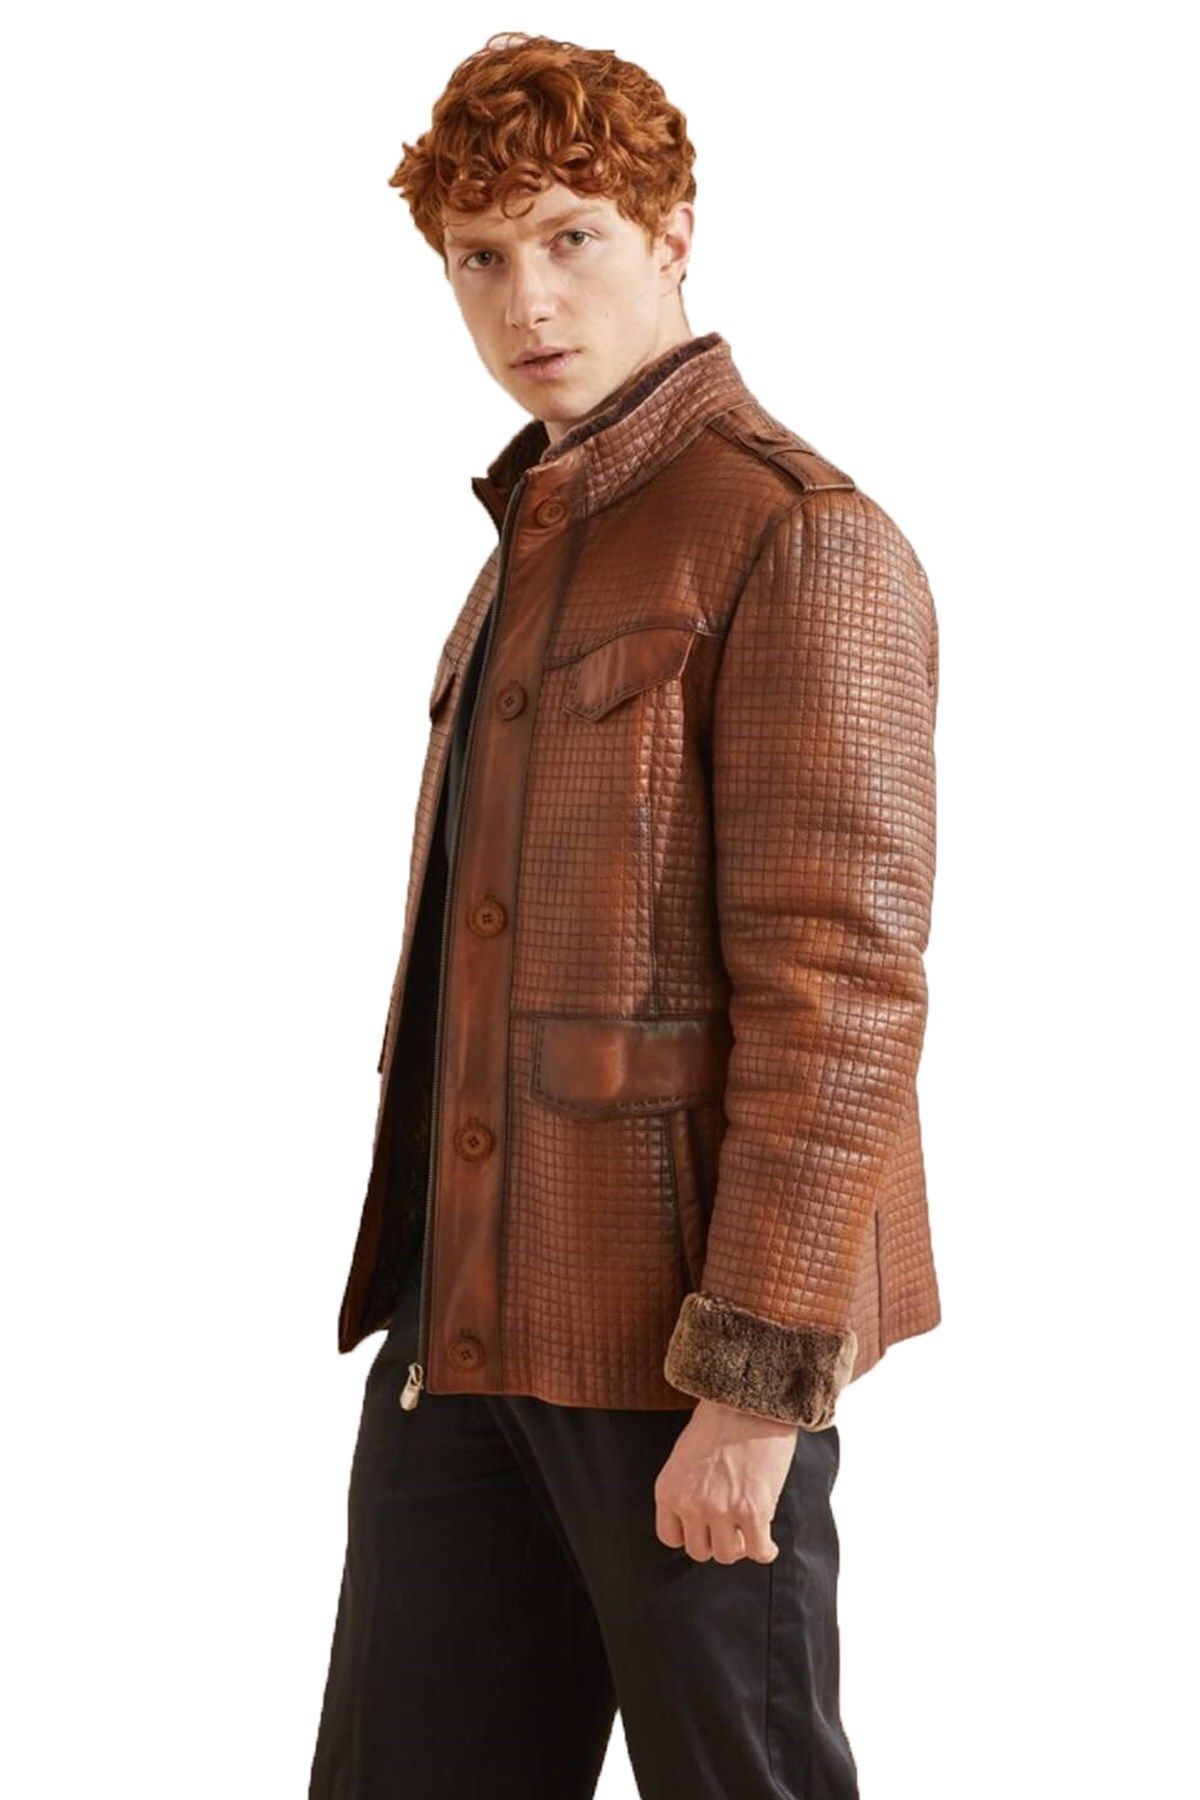 Deriderim کت مردانه خز اصل گرم Whiskey Bonucci با موهای قهوه ای داخل و دکمه های زیپ دار تزئینی